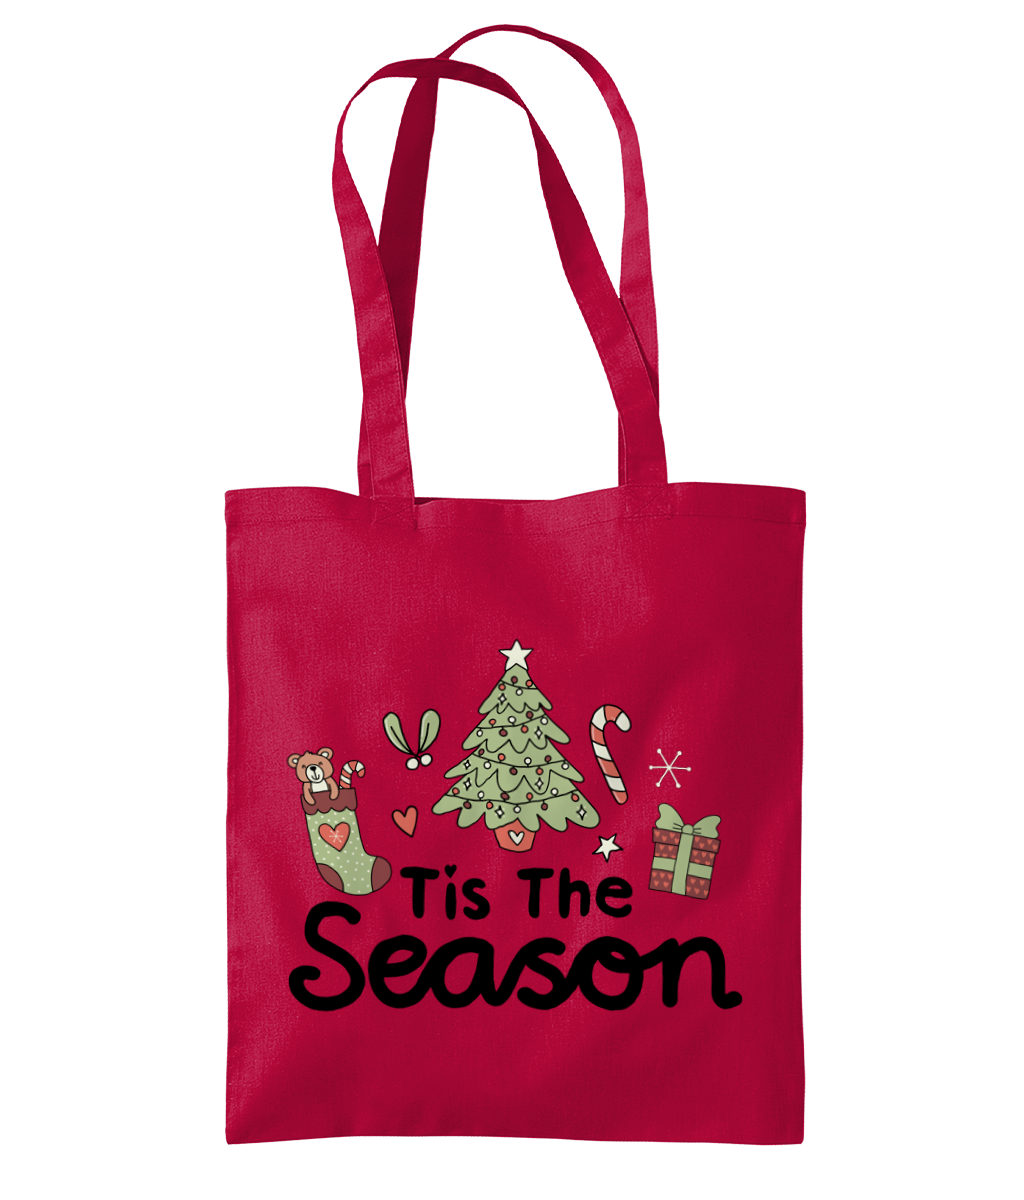 Tis The Season - Organic Premium Cotton Tote Bag